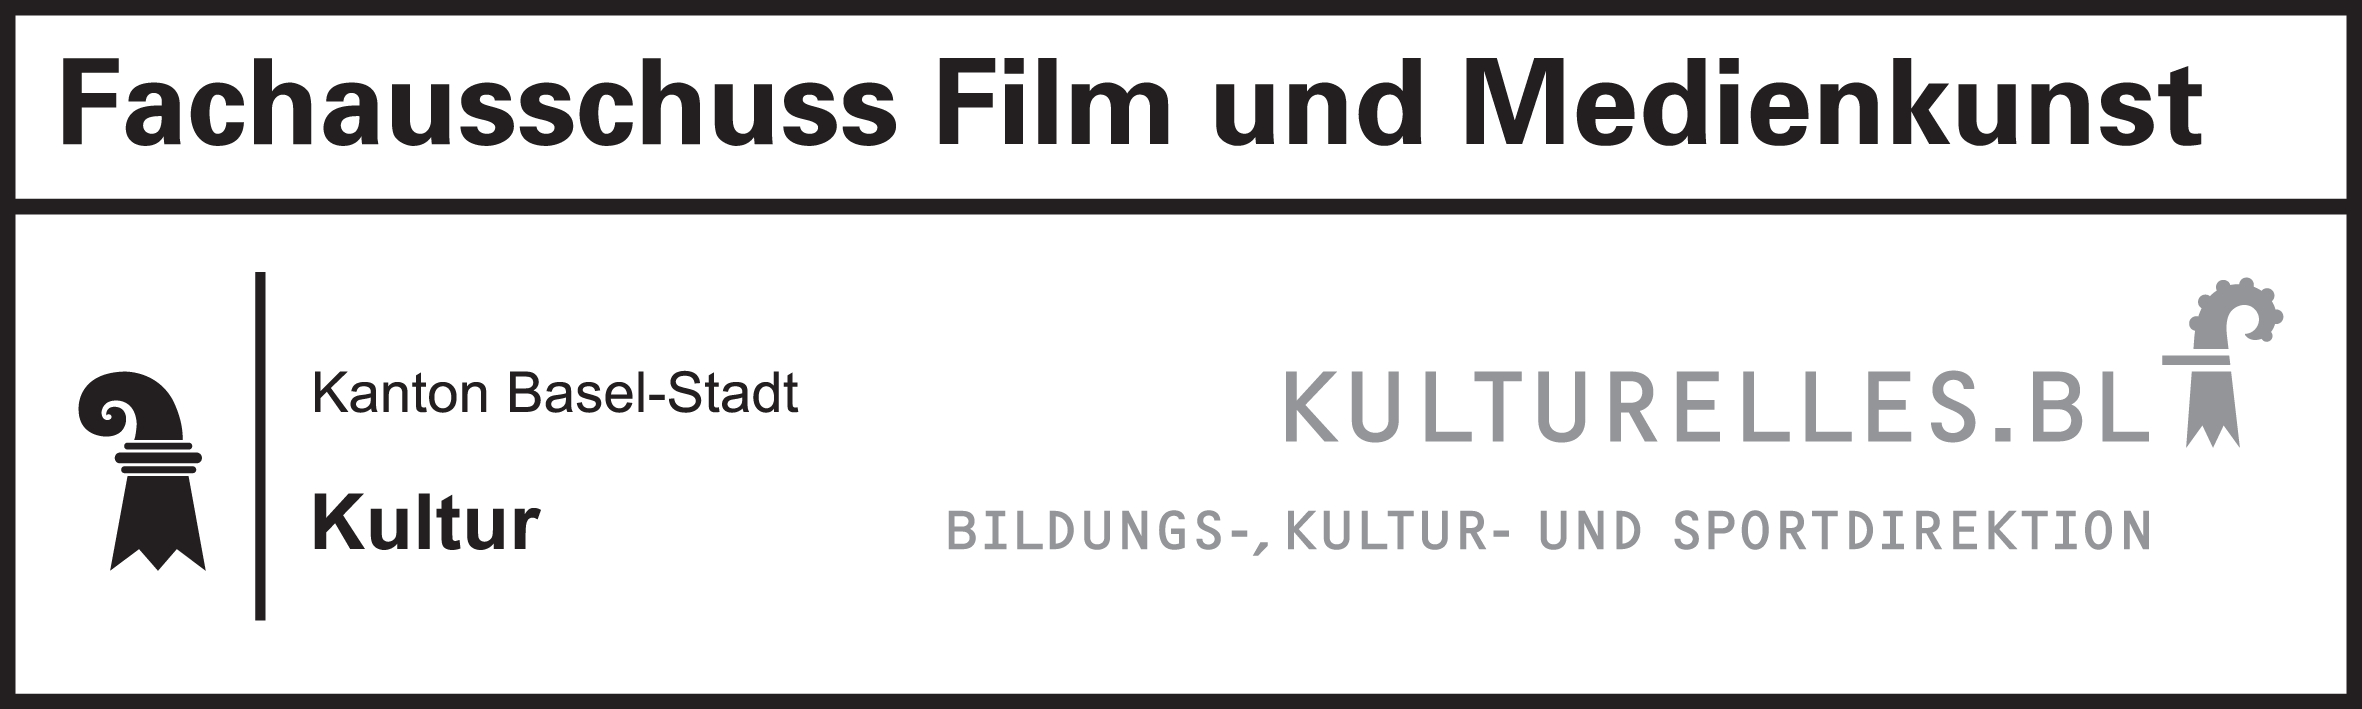 Fachausschuss Film und Medienkunst BS/BL